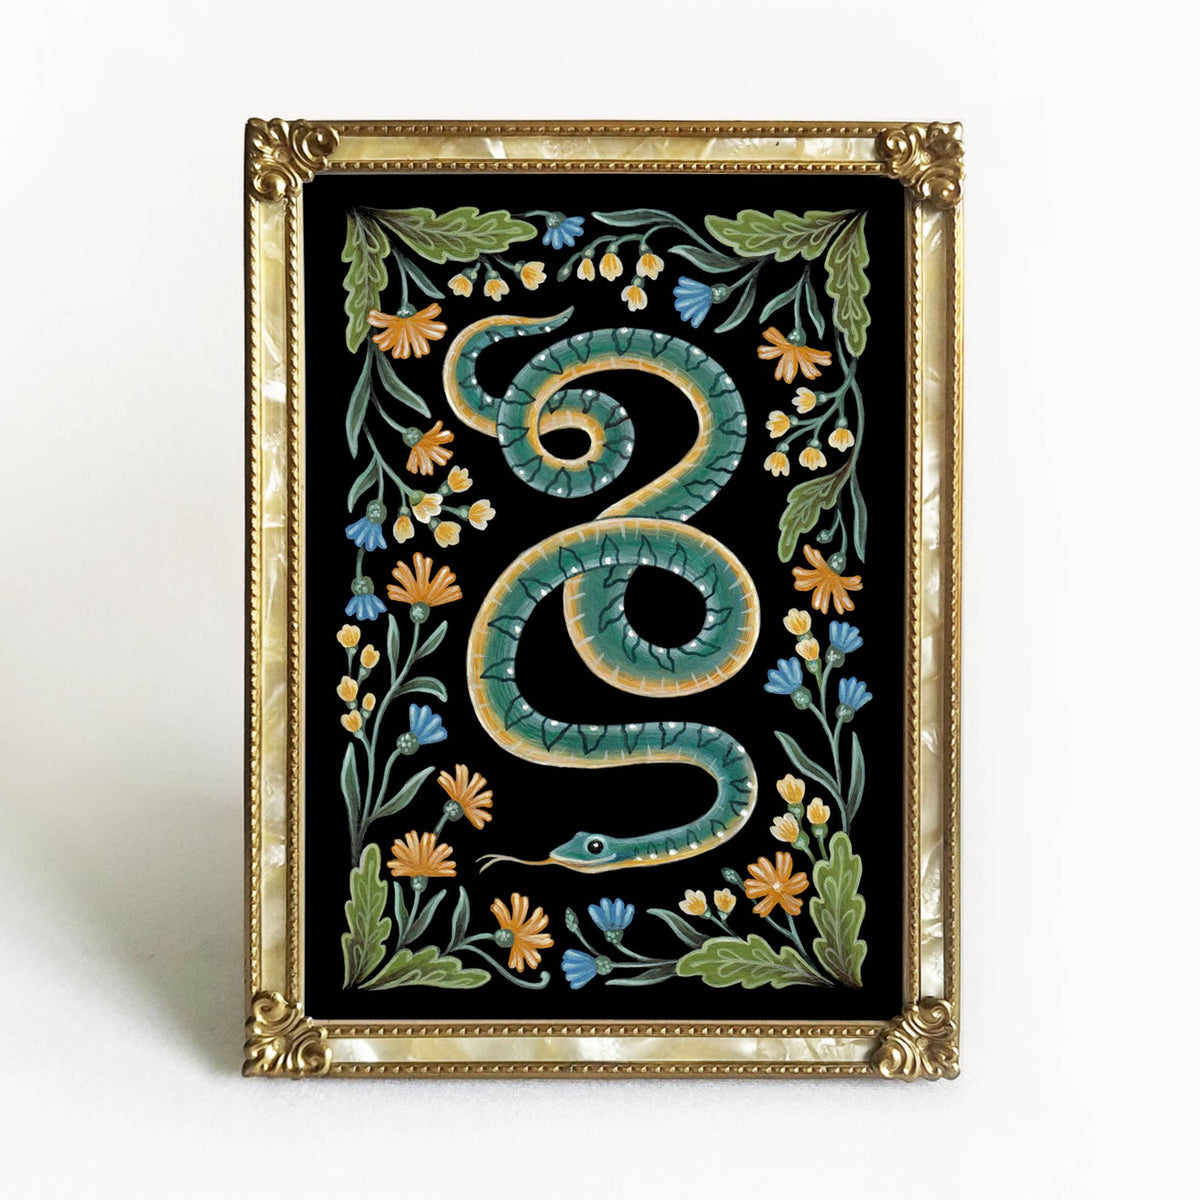 Faina Lorah Snake Art Print Folk Decor: 5x7